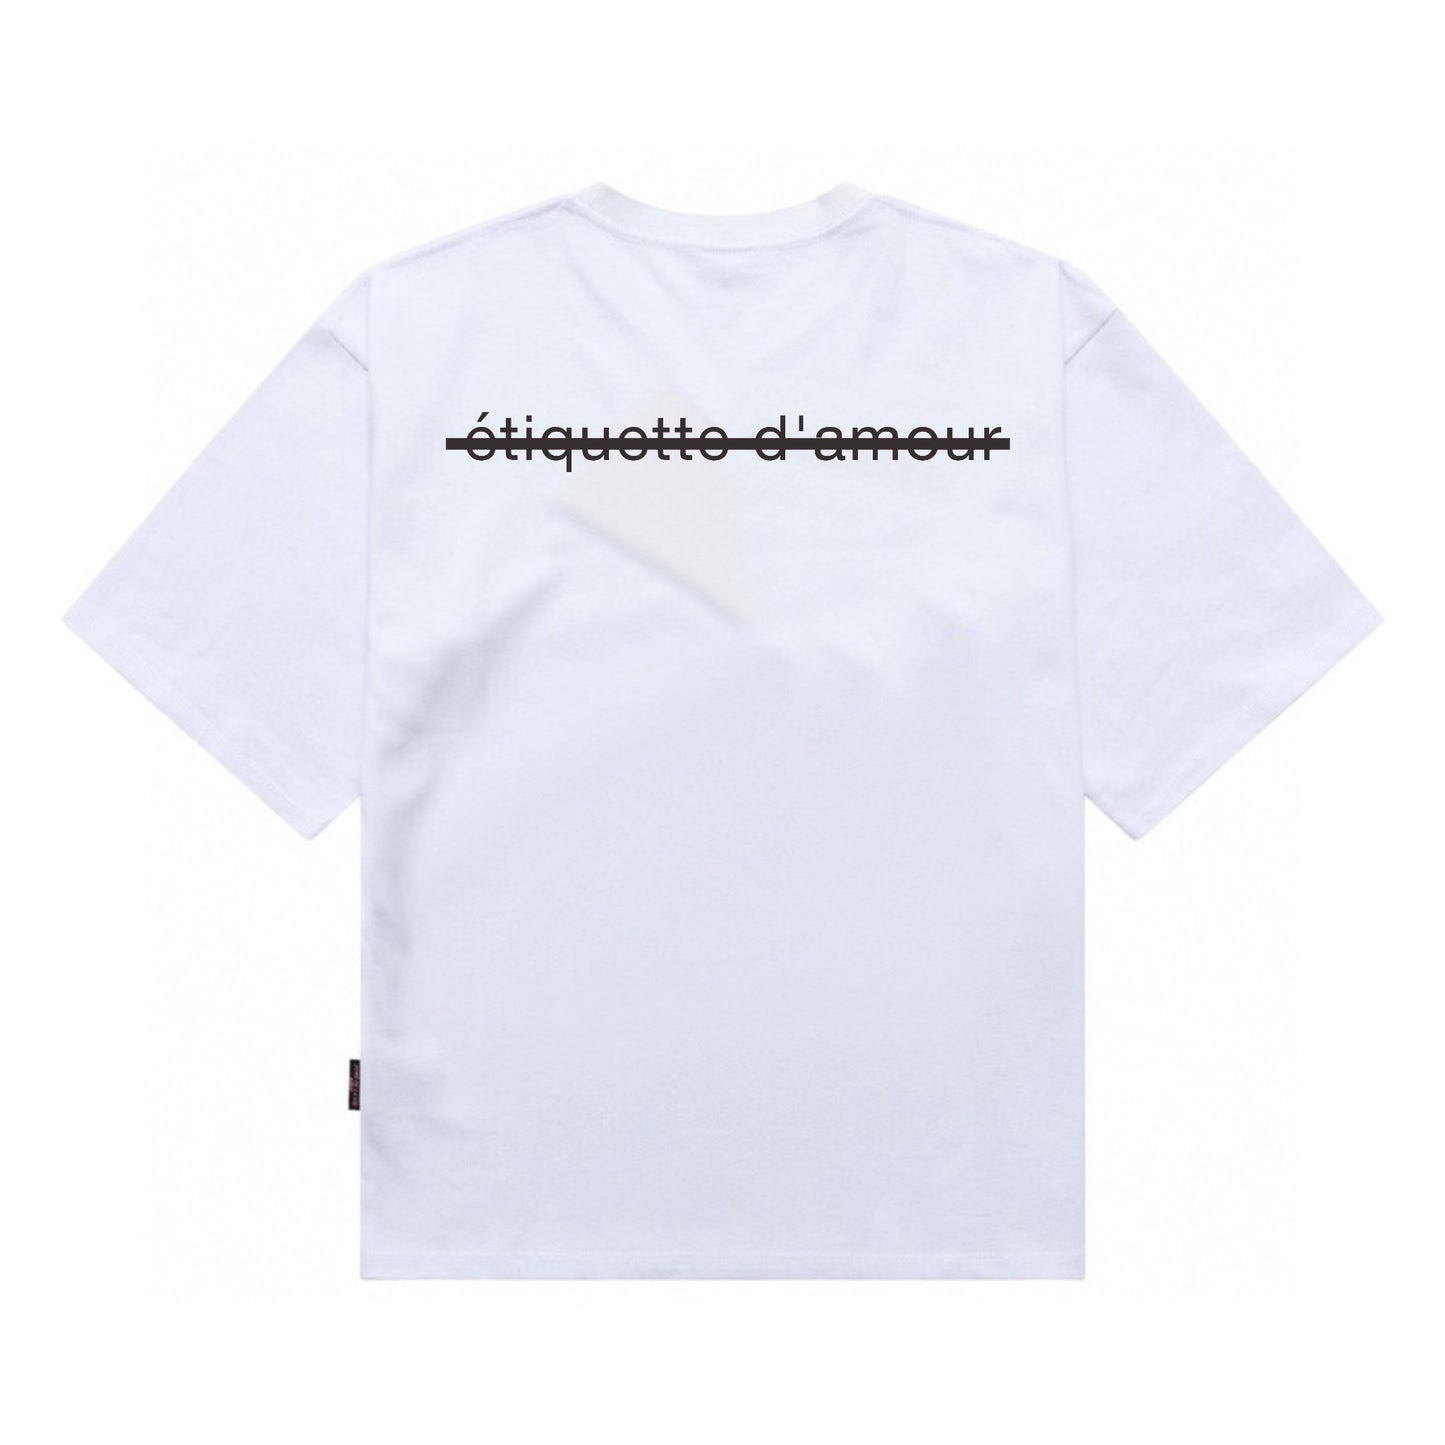 Etiquette Unisex Oversized T-Shirt - 0025 Silver Chrome Bear